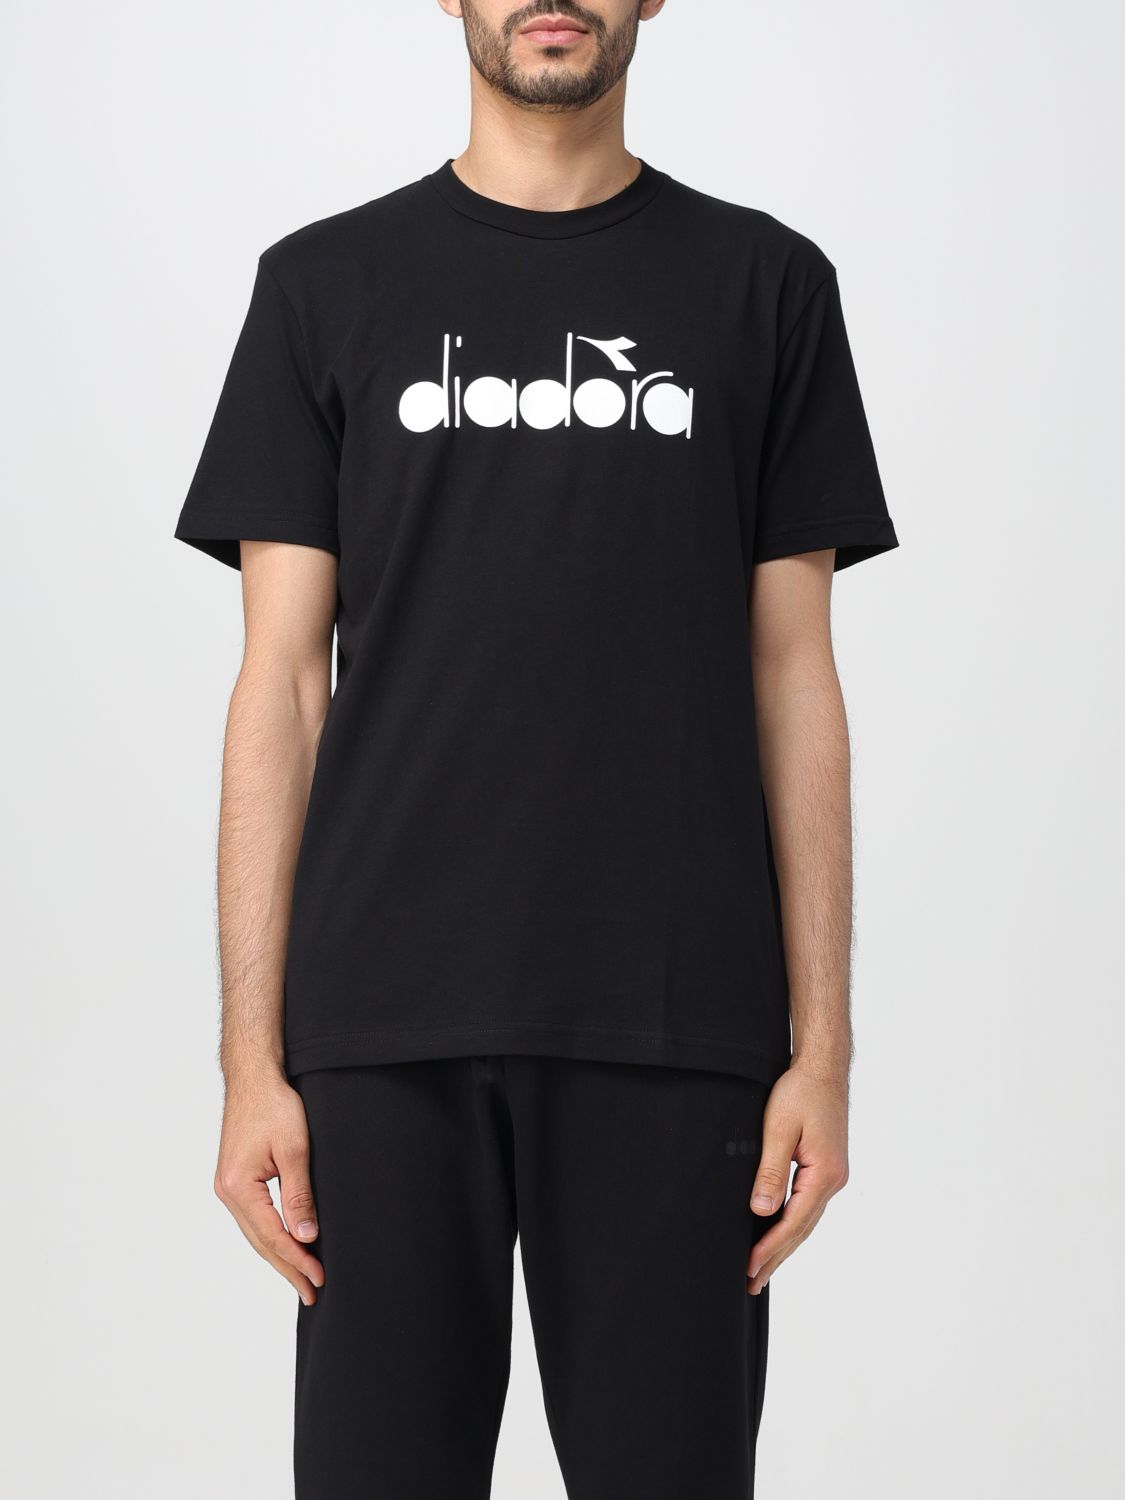 Diadora T-shirt  Men Color Black